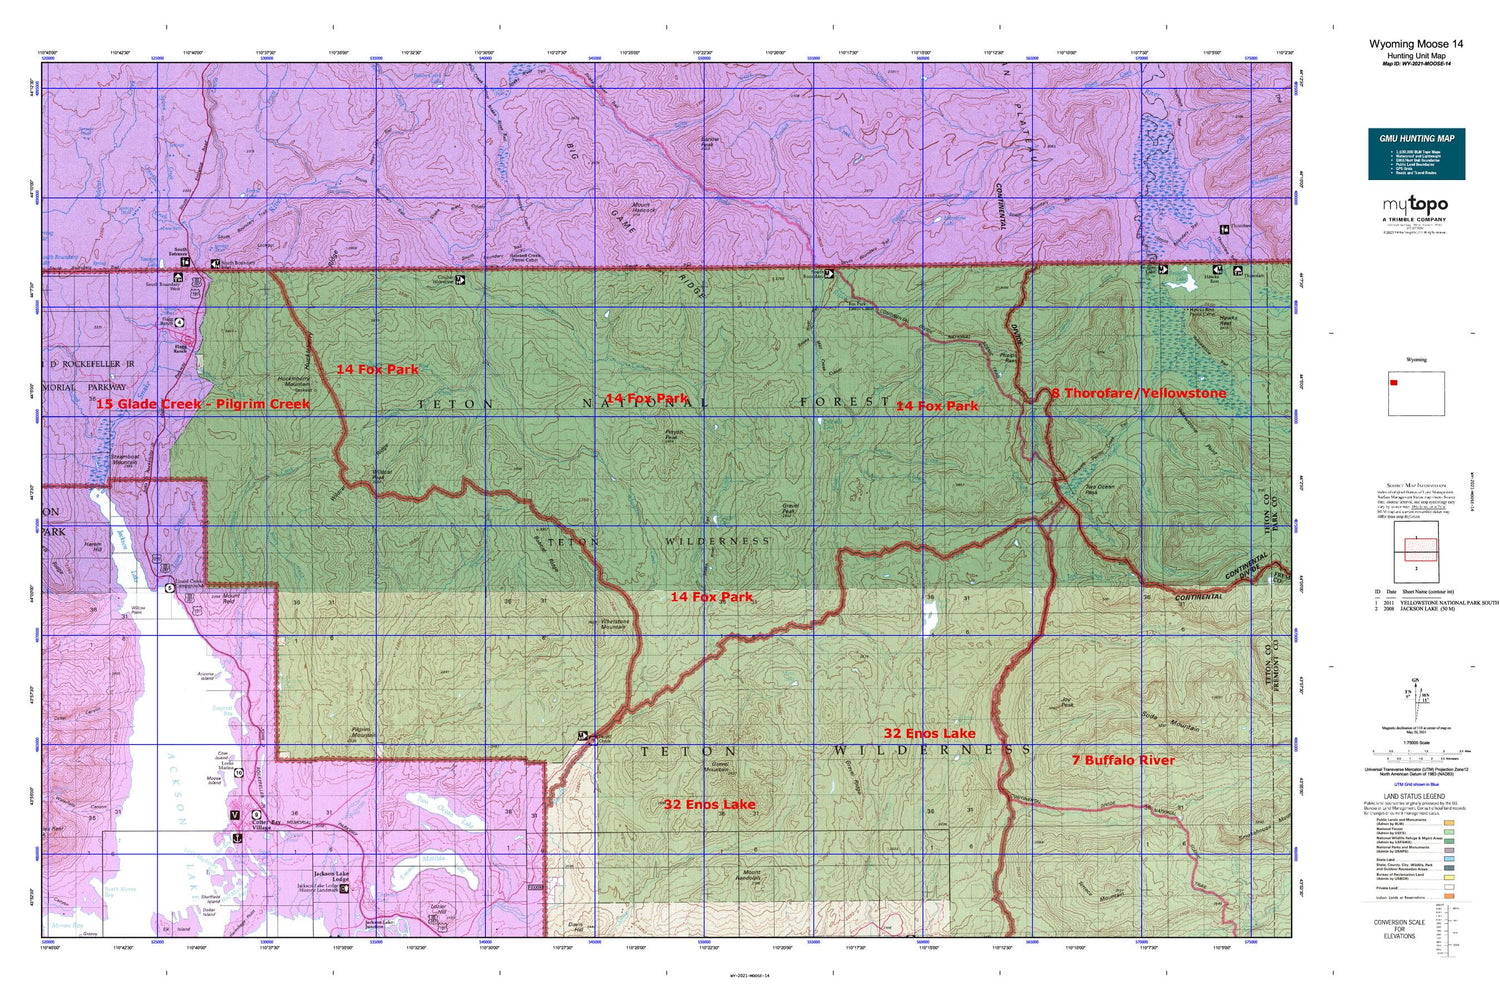 Wyoming Moose 14 Map Image